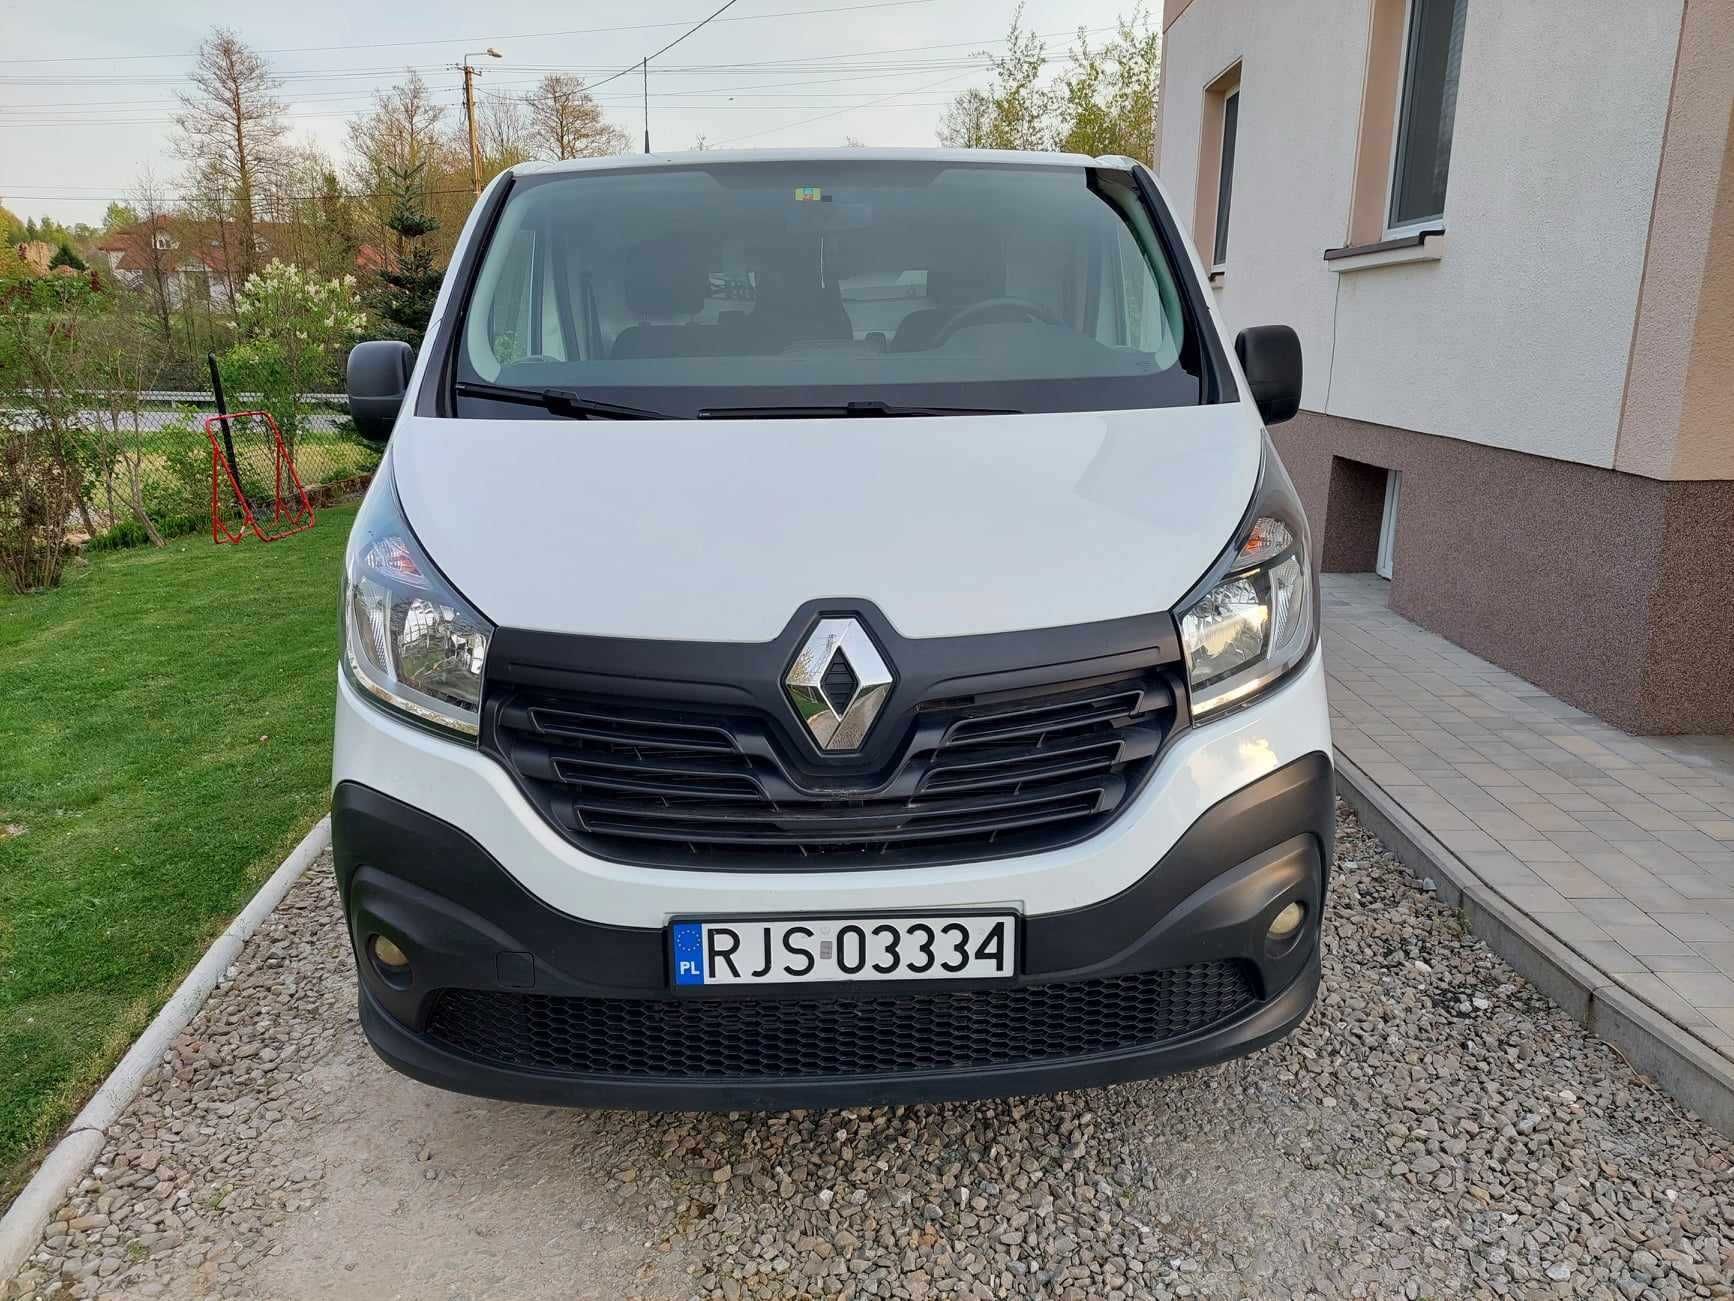 Renault Trafic 1.6 DCI 125 km 2018 r. prywatny polecam!!!